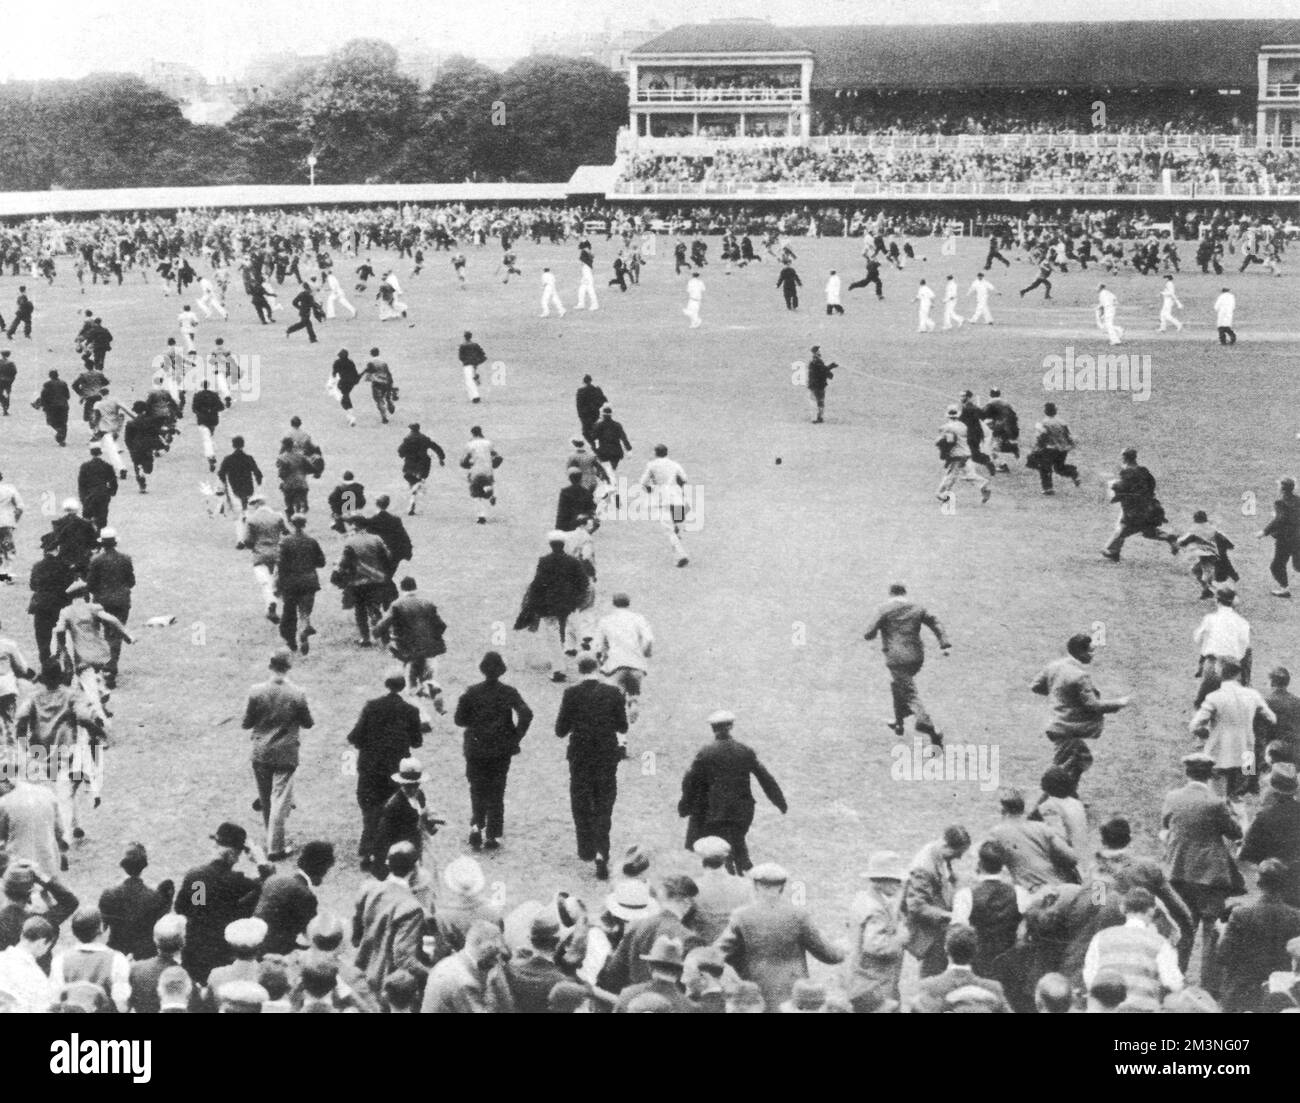 L'enthousiasme de la foule après la victoire de l'Angleterre : les spectateurs se faufilent sur le terrain, tandis que les joueurs font un trait pour le pavillon. L'Angleterre a battu l'Australie lors du deuxième match d'essai de Lor's le 25th juin par des gains et 38 courses, malgré les fortes pluies de week-end qui affectent le terrain. Date: 25 juin 1934 Banque D'Images